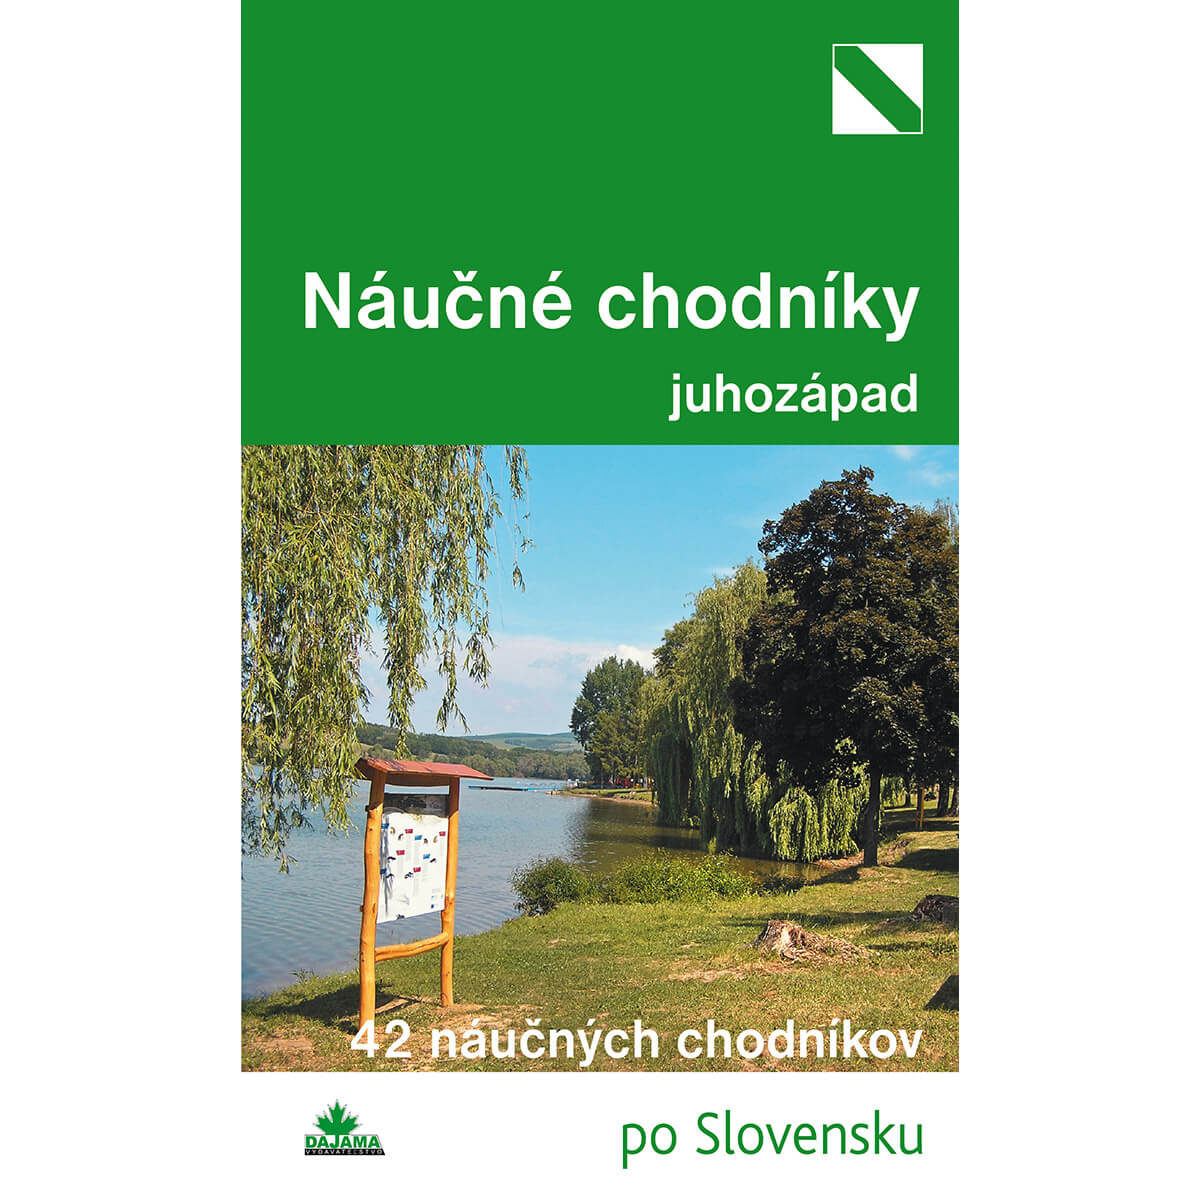 Kniha Náučné chodníky juhozápad - 42 náučných chodníkov po Slovensku z vydavateľstva Dajama